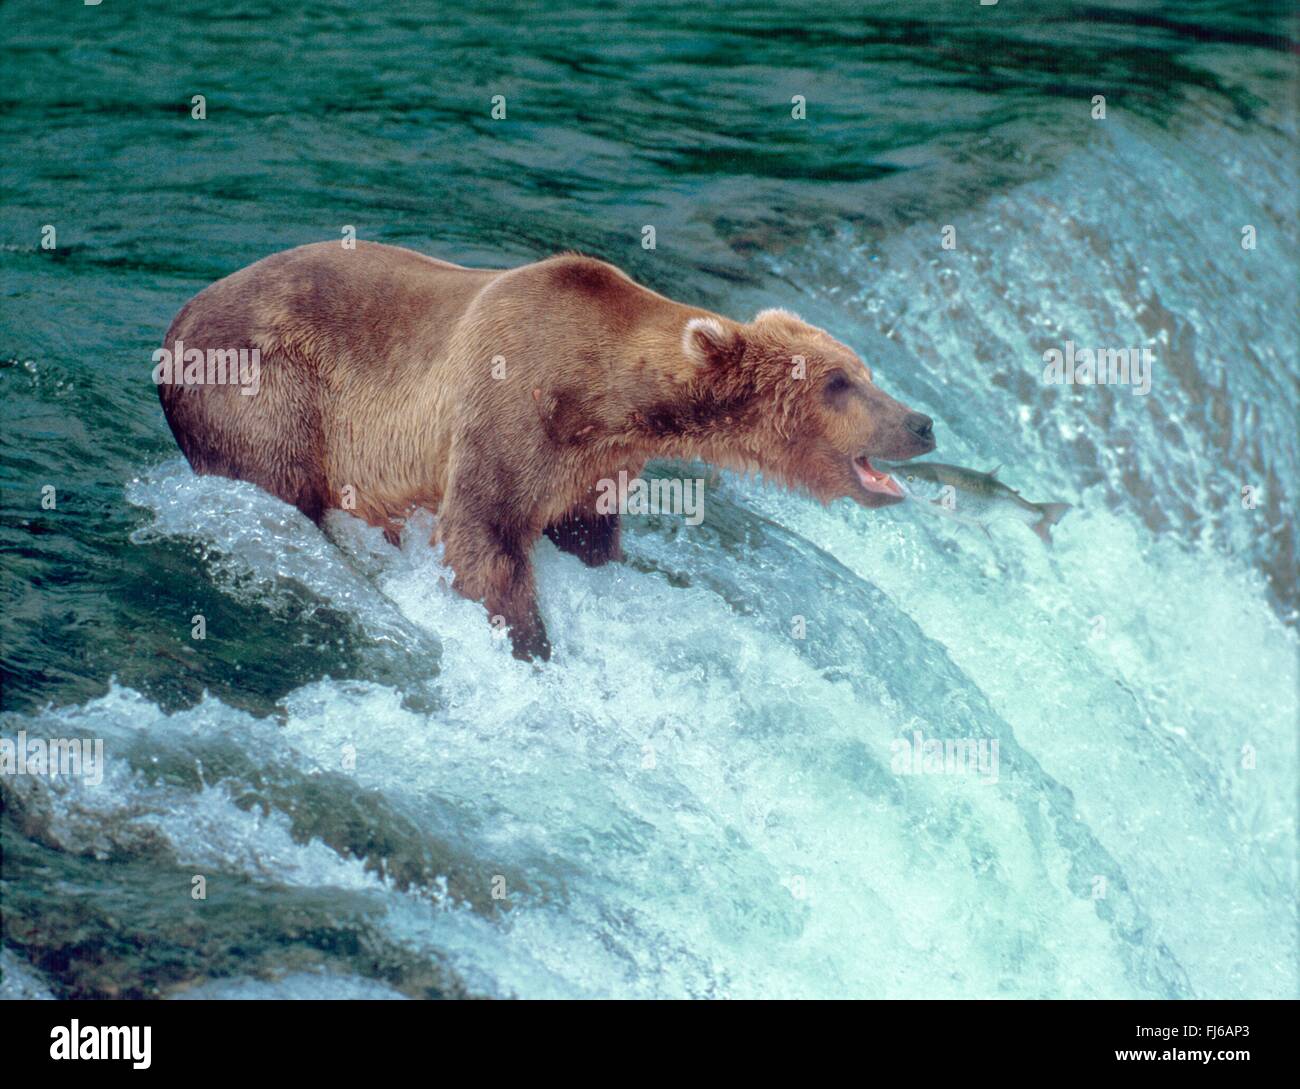 Kodiak Bären (Ursus Arctos Middendorfi, Ursus Arctos Middendorffi), tragen einen Lachs am Wasserfall, Fische springen in den Mund, USA, Alaska Angeln Stockfoto